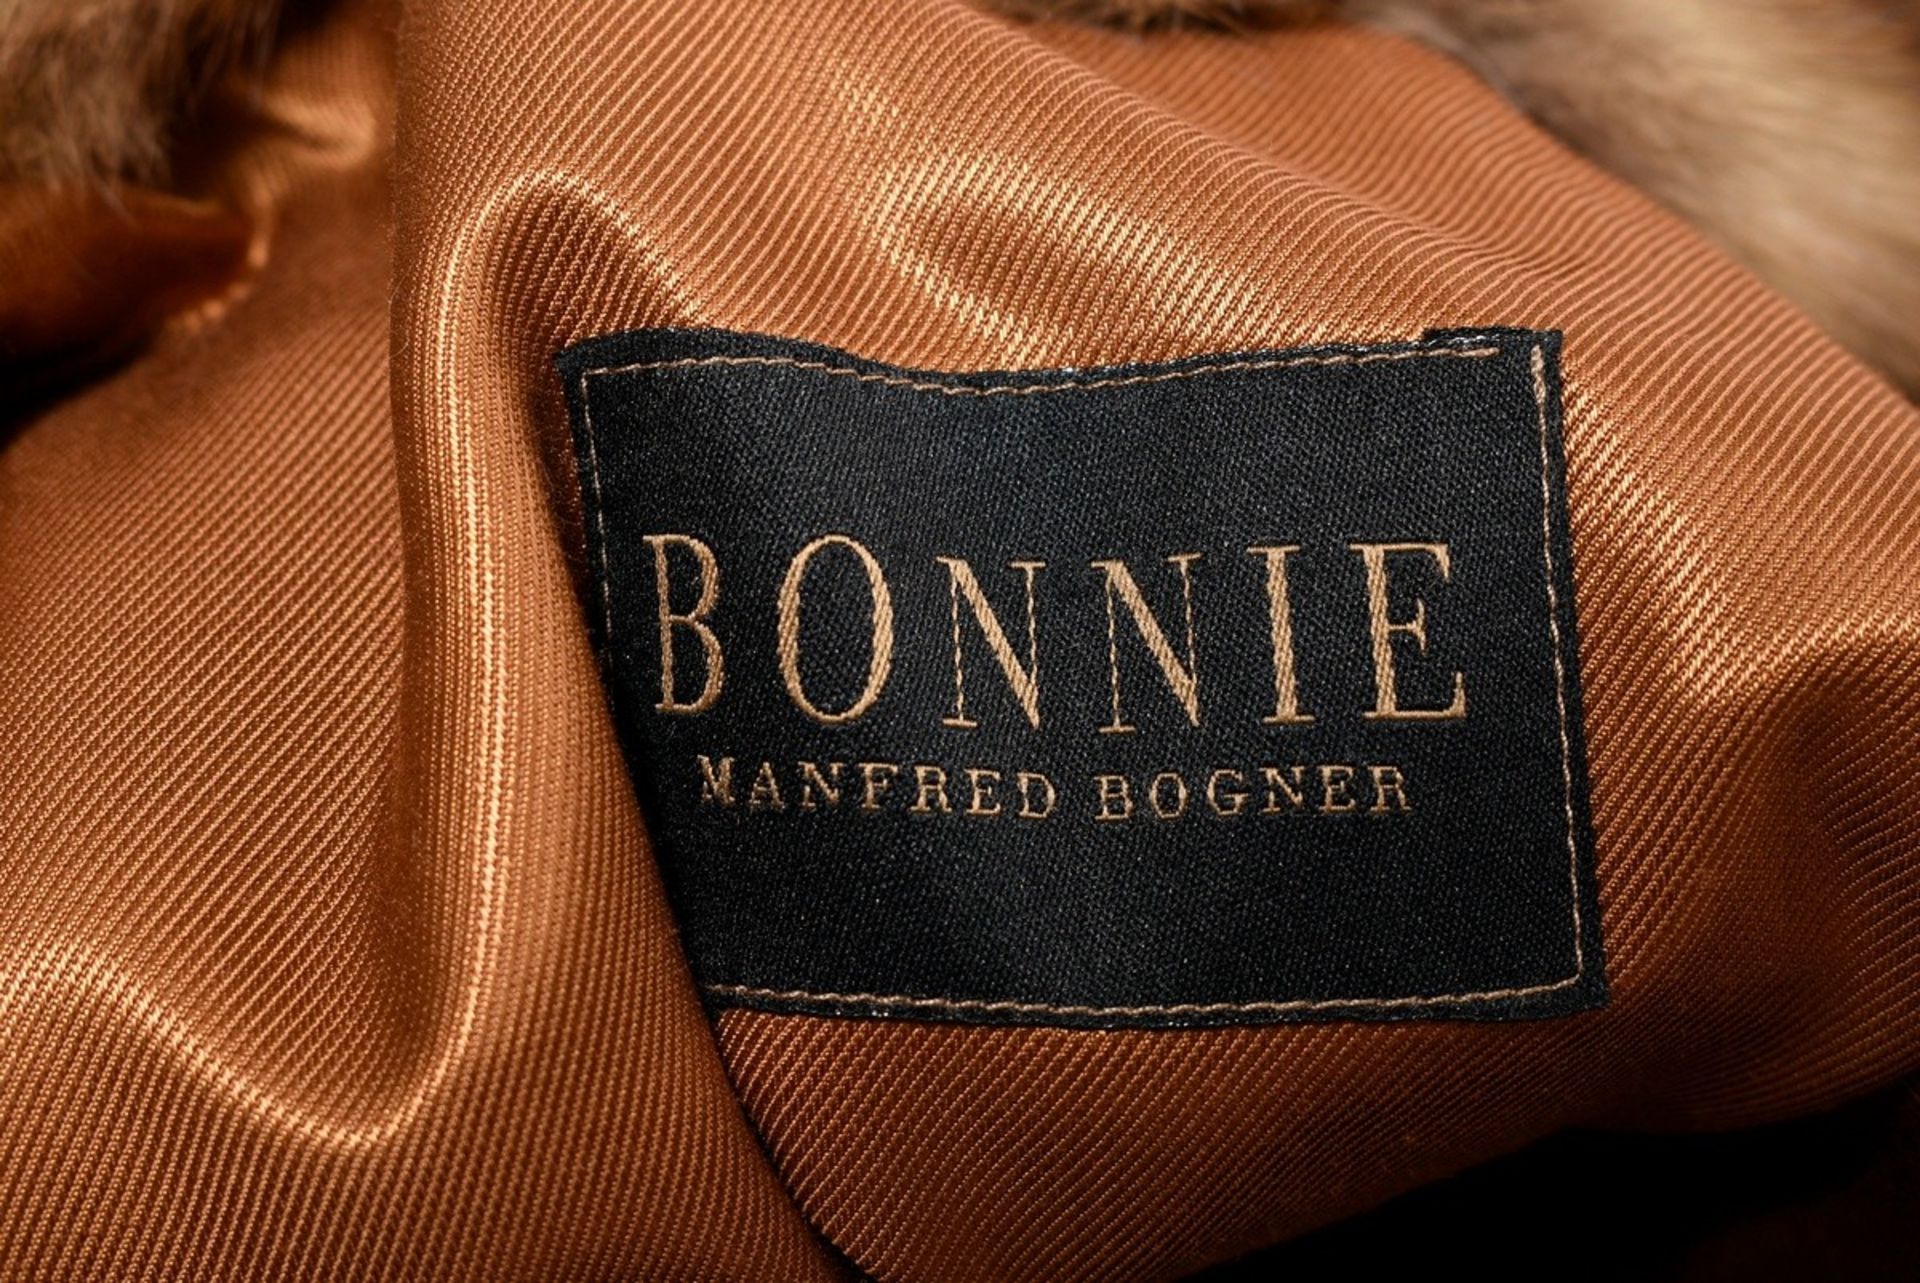 Kanadische Goldzobel Jacke aus längs verarbeiteten Fellen, Bonnie Models Nr. 161940, 2004 bei Unger - Bild 5 aus 5